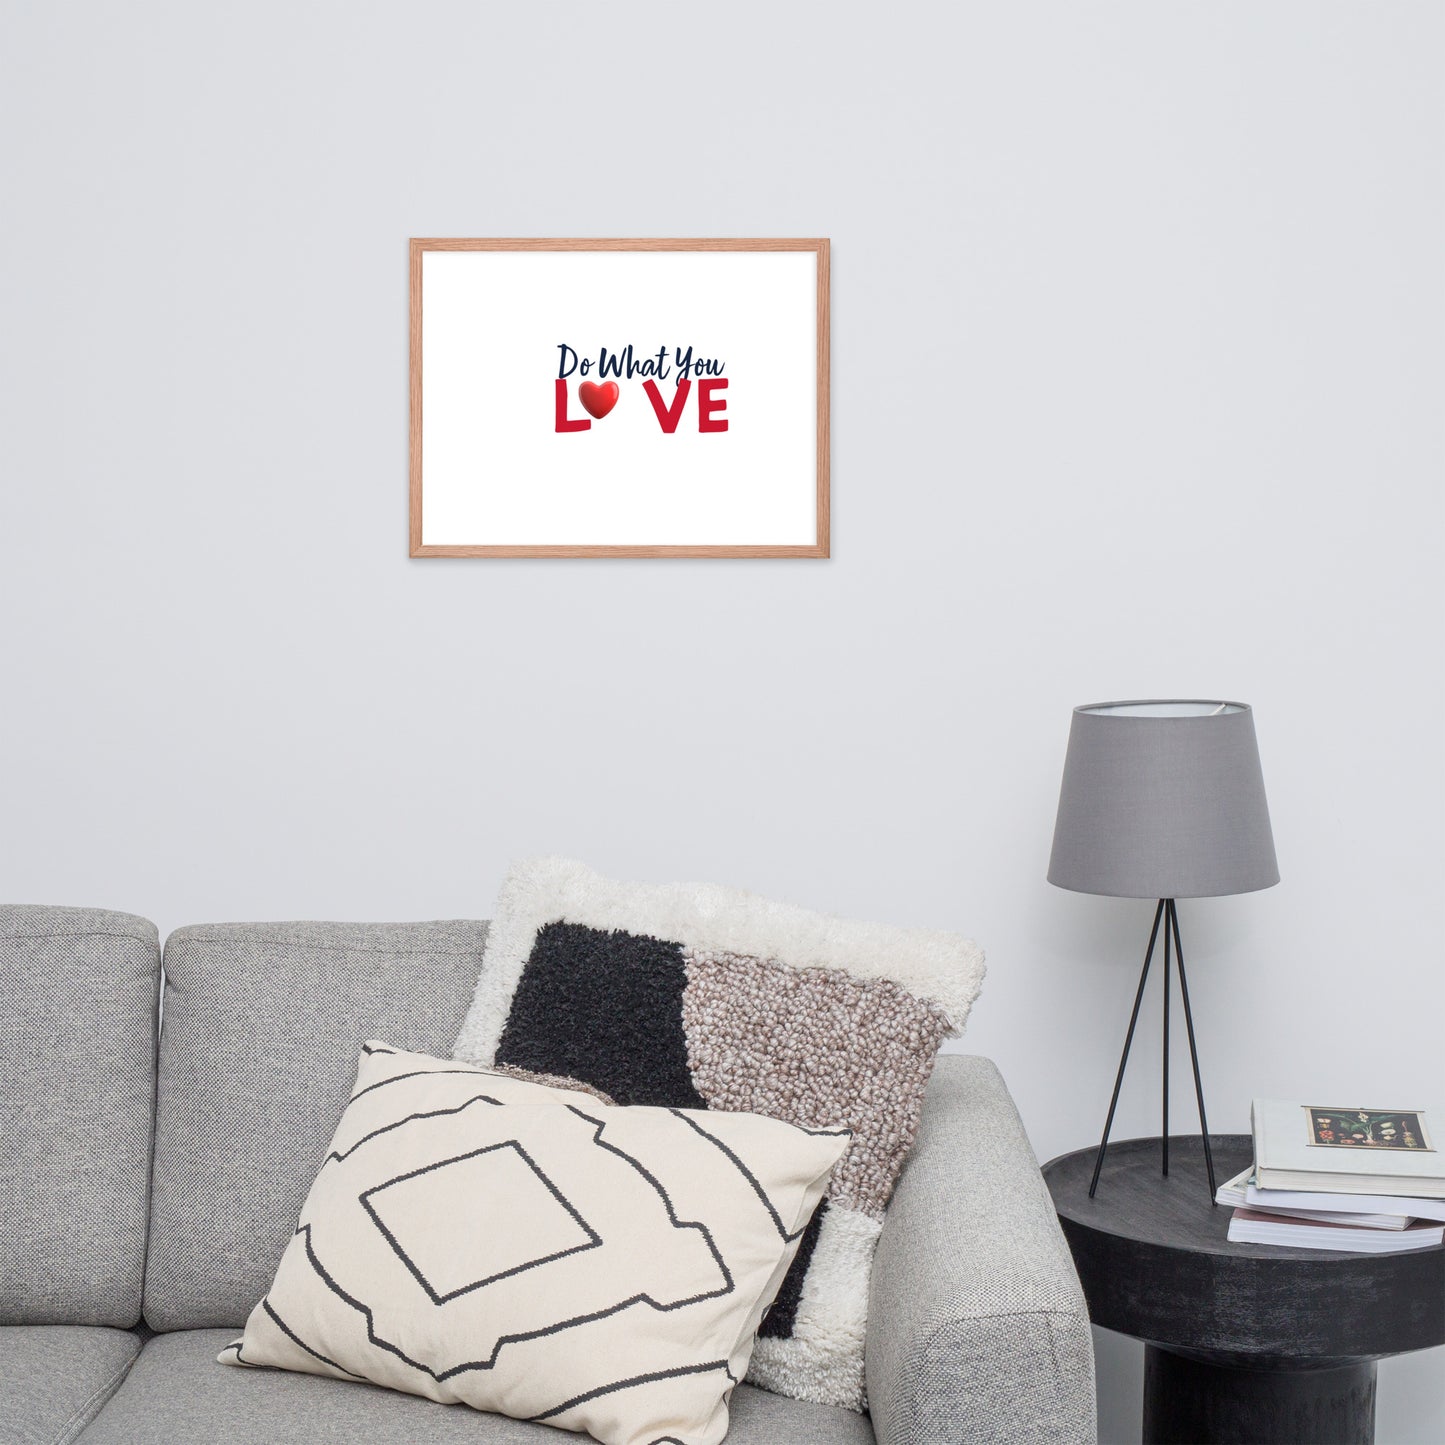 Framed Poster (Do What You Love - Love Framed Poster Horizontal Model 002)